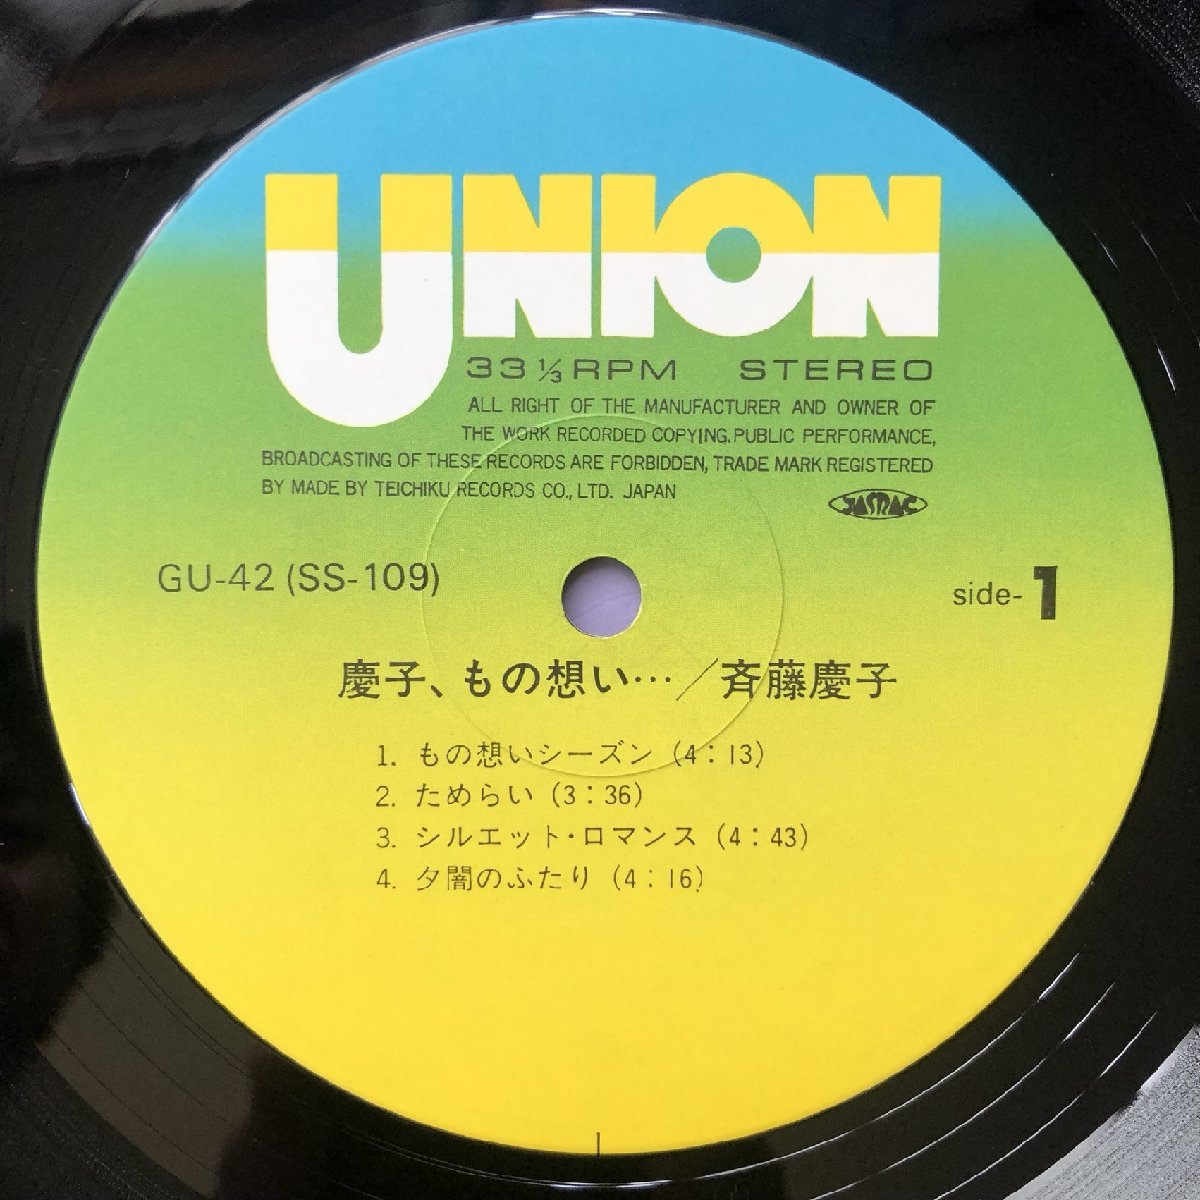 傷なし美盤 美品 斉藤慶子 Keiko Saito 1982年 LPレコード 慶子、もの想い… オリジナルリリース盤 帯付 J-Pop 12P 写真ブックレット_画像7